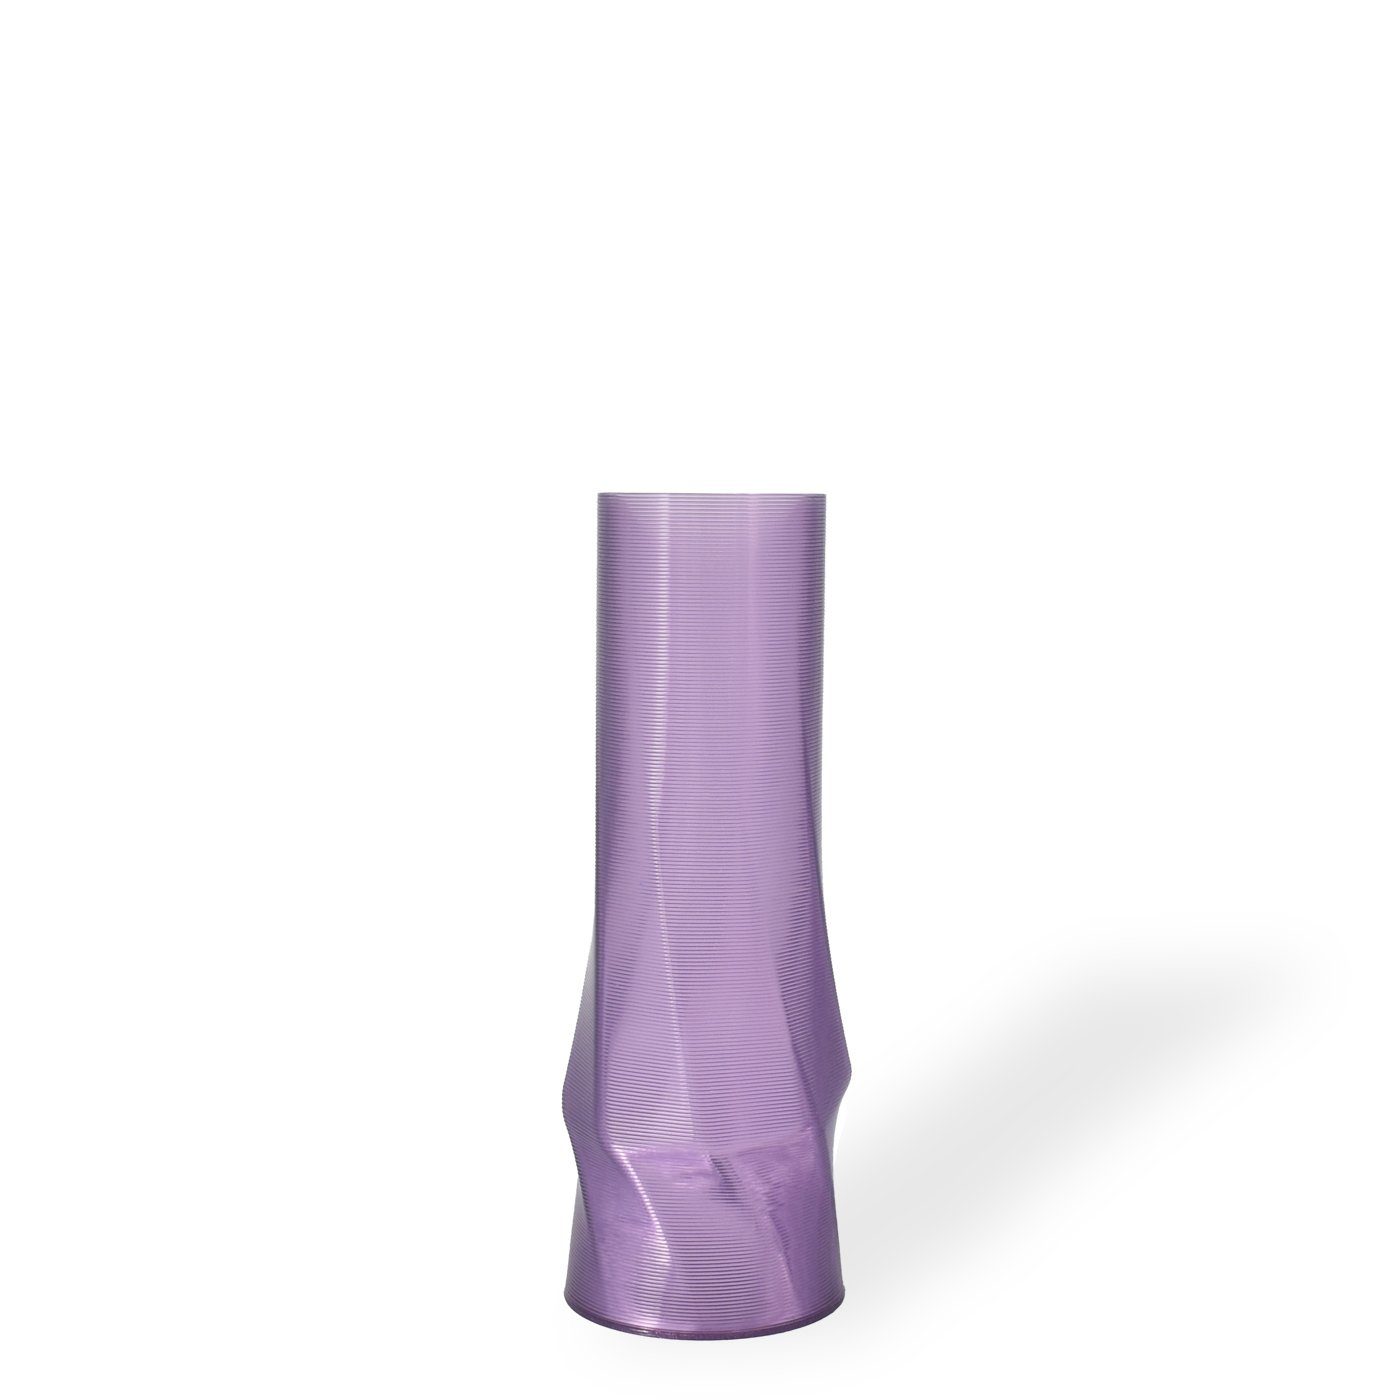 Shapes - Decorations Dekovase the vase - circle (deco), 3D Vasen, viele Farben, 100% 3D-Druck (Einzelmodell, 1 Vase), Durchsichtig; Leichte Struktur innerhalb des Materials (Rillung) Lila